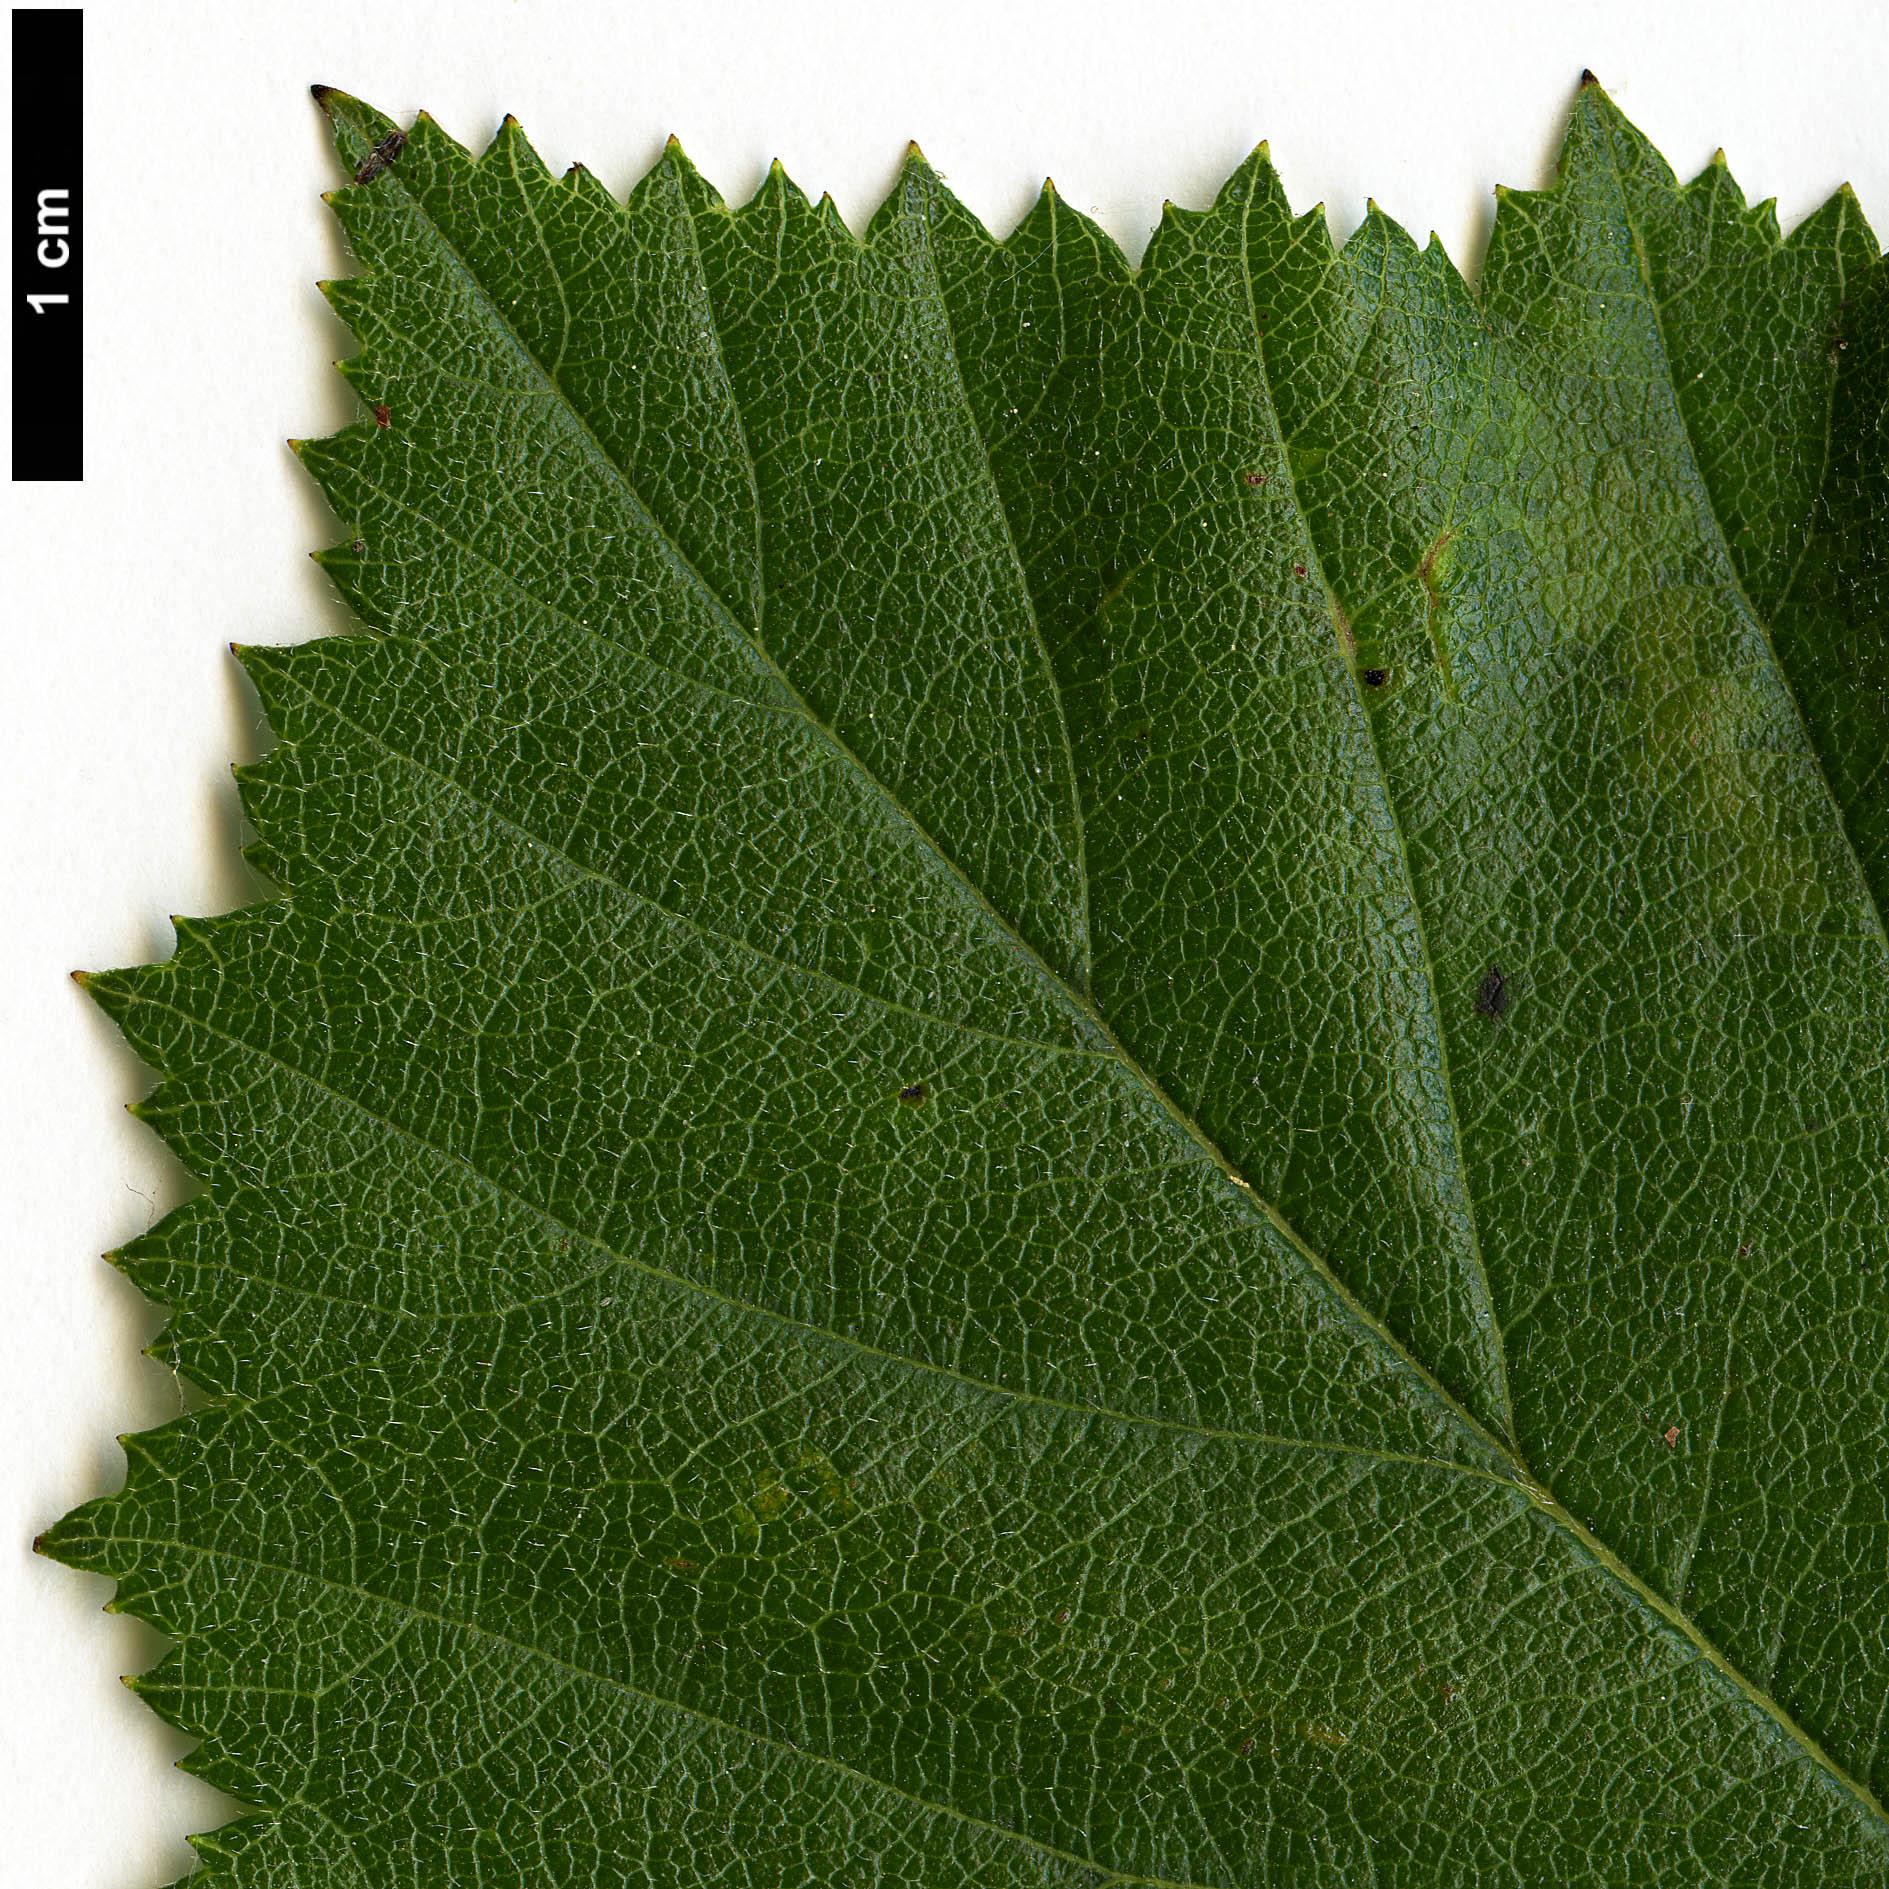 High resolution image: Family: Rosaceae - Genus: Crataegus - Taxon: harbisonii